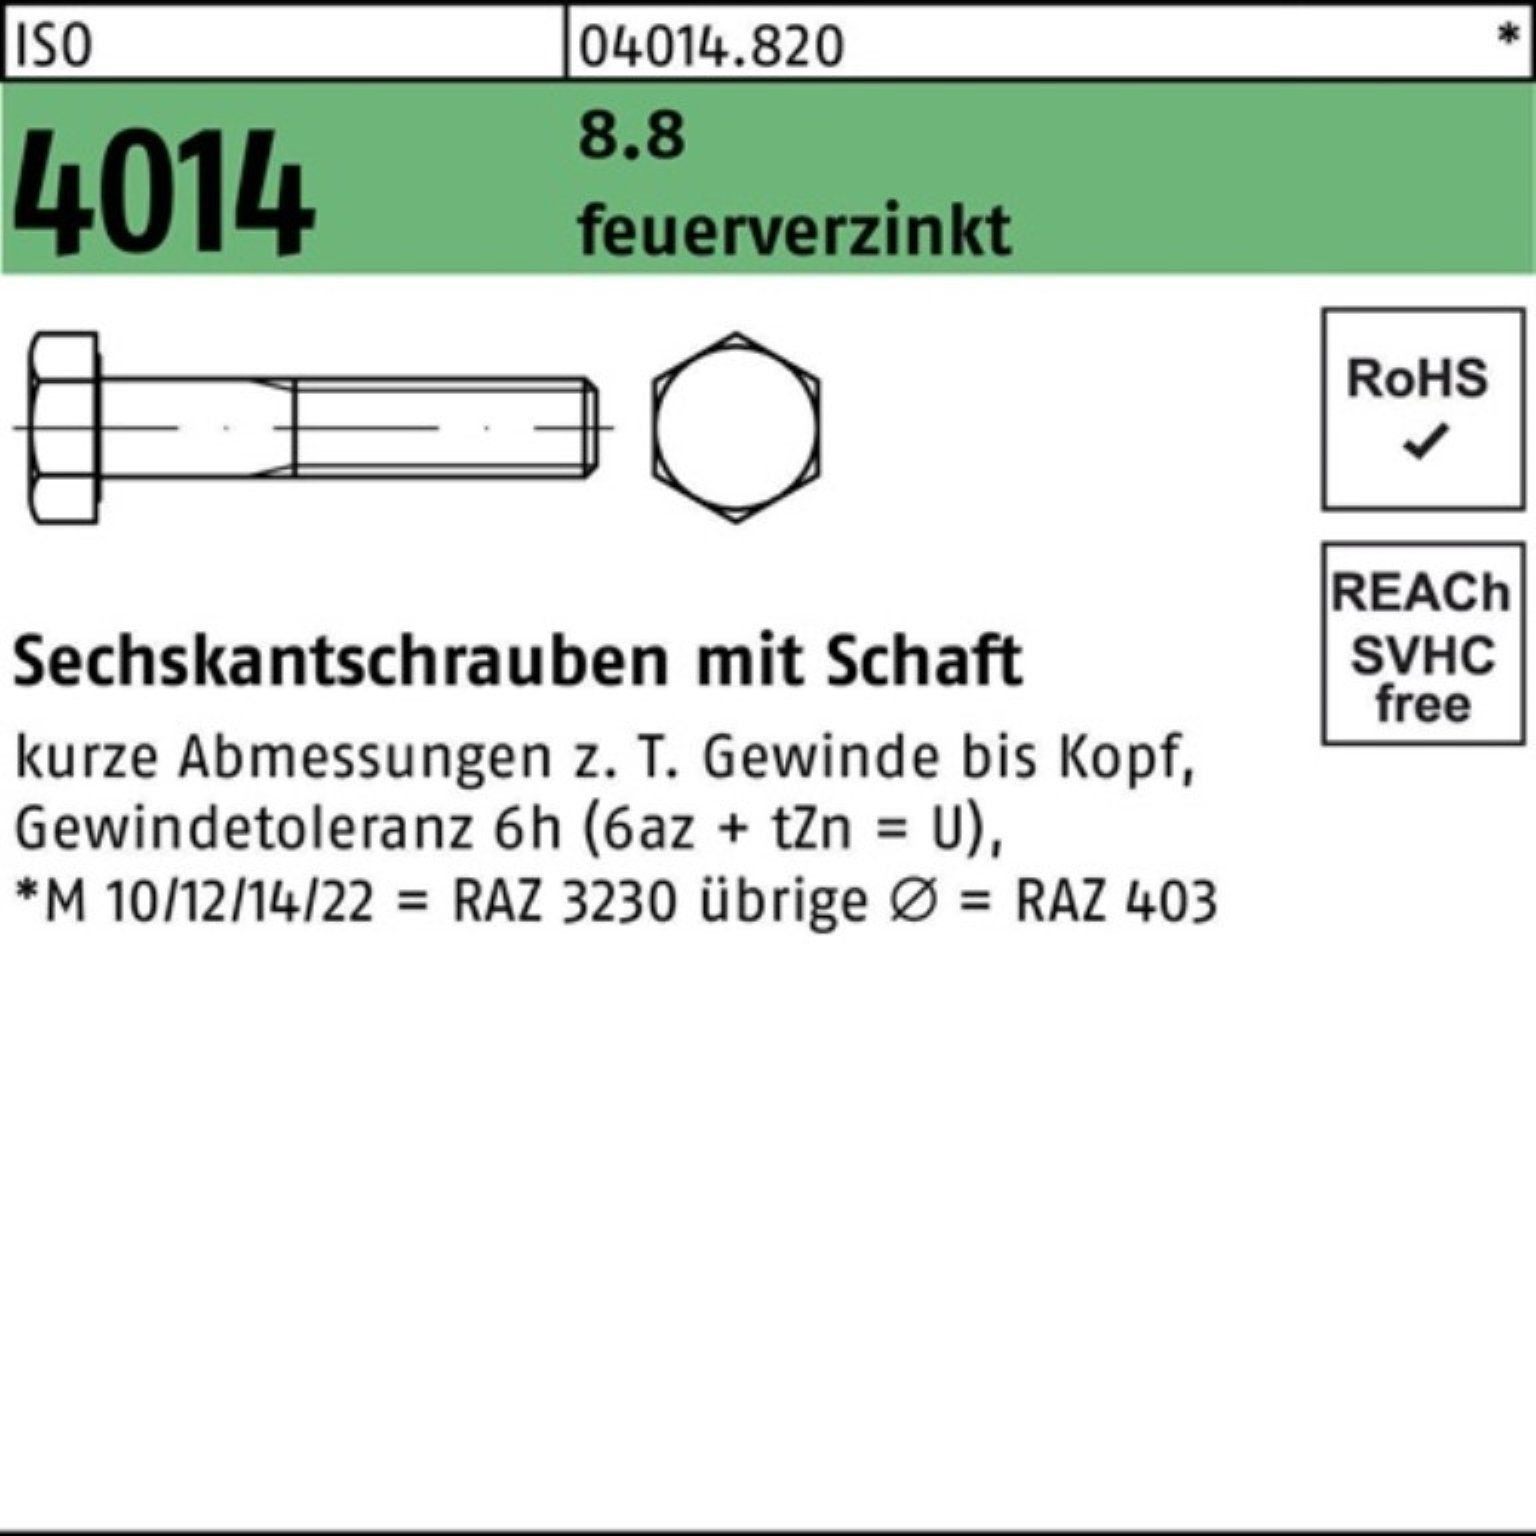 Bufab Sechskantschraube 100er Pack Sechskantschraube ISO 4014 Schaft M12x 100 8.8 feuerverz. 5